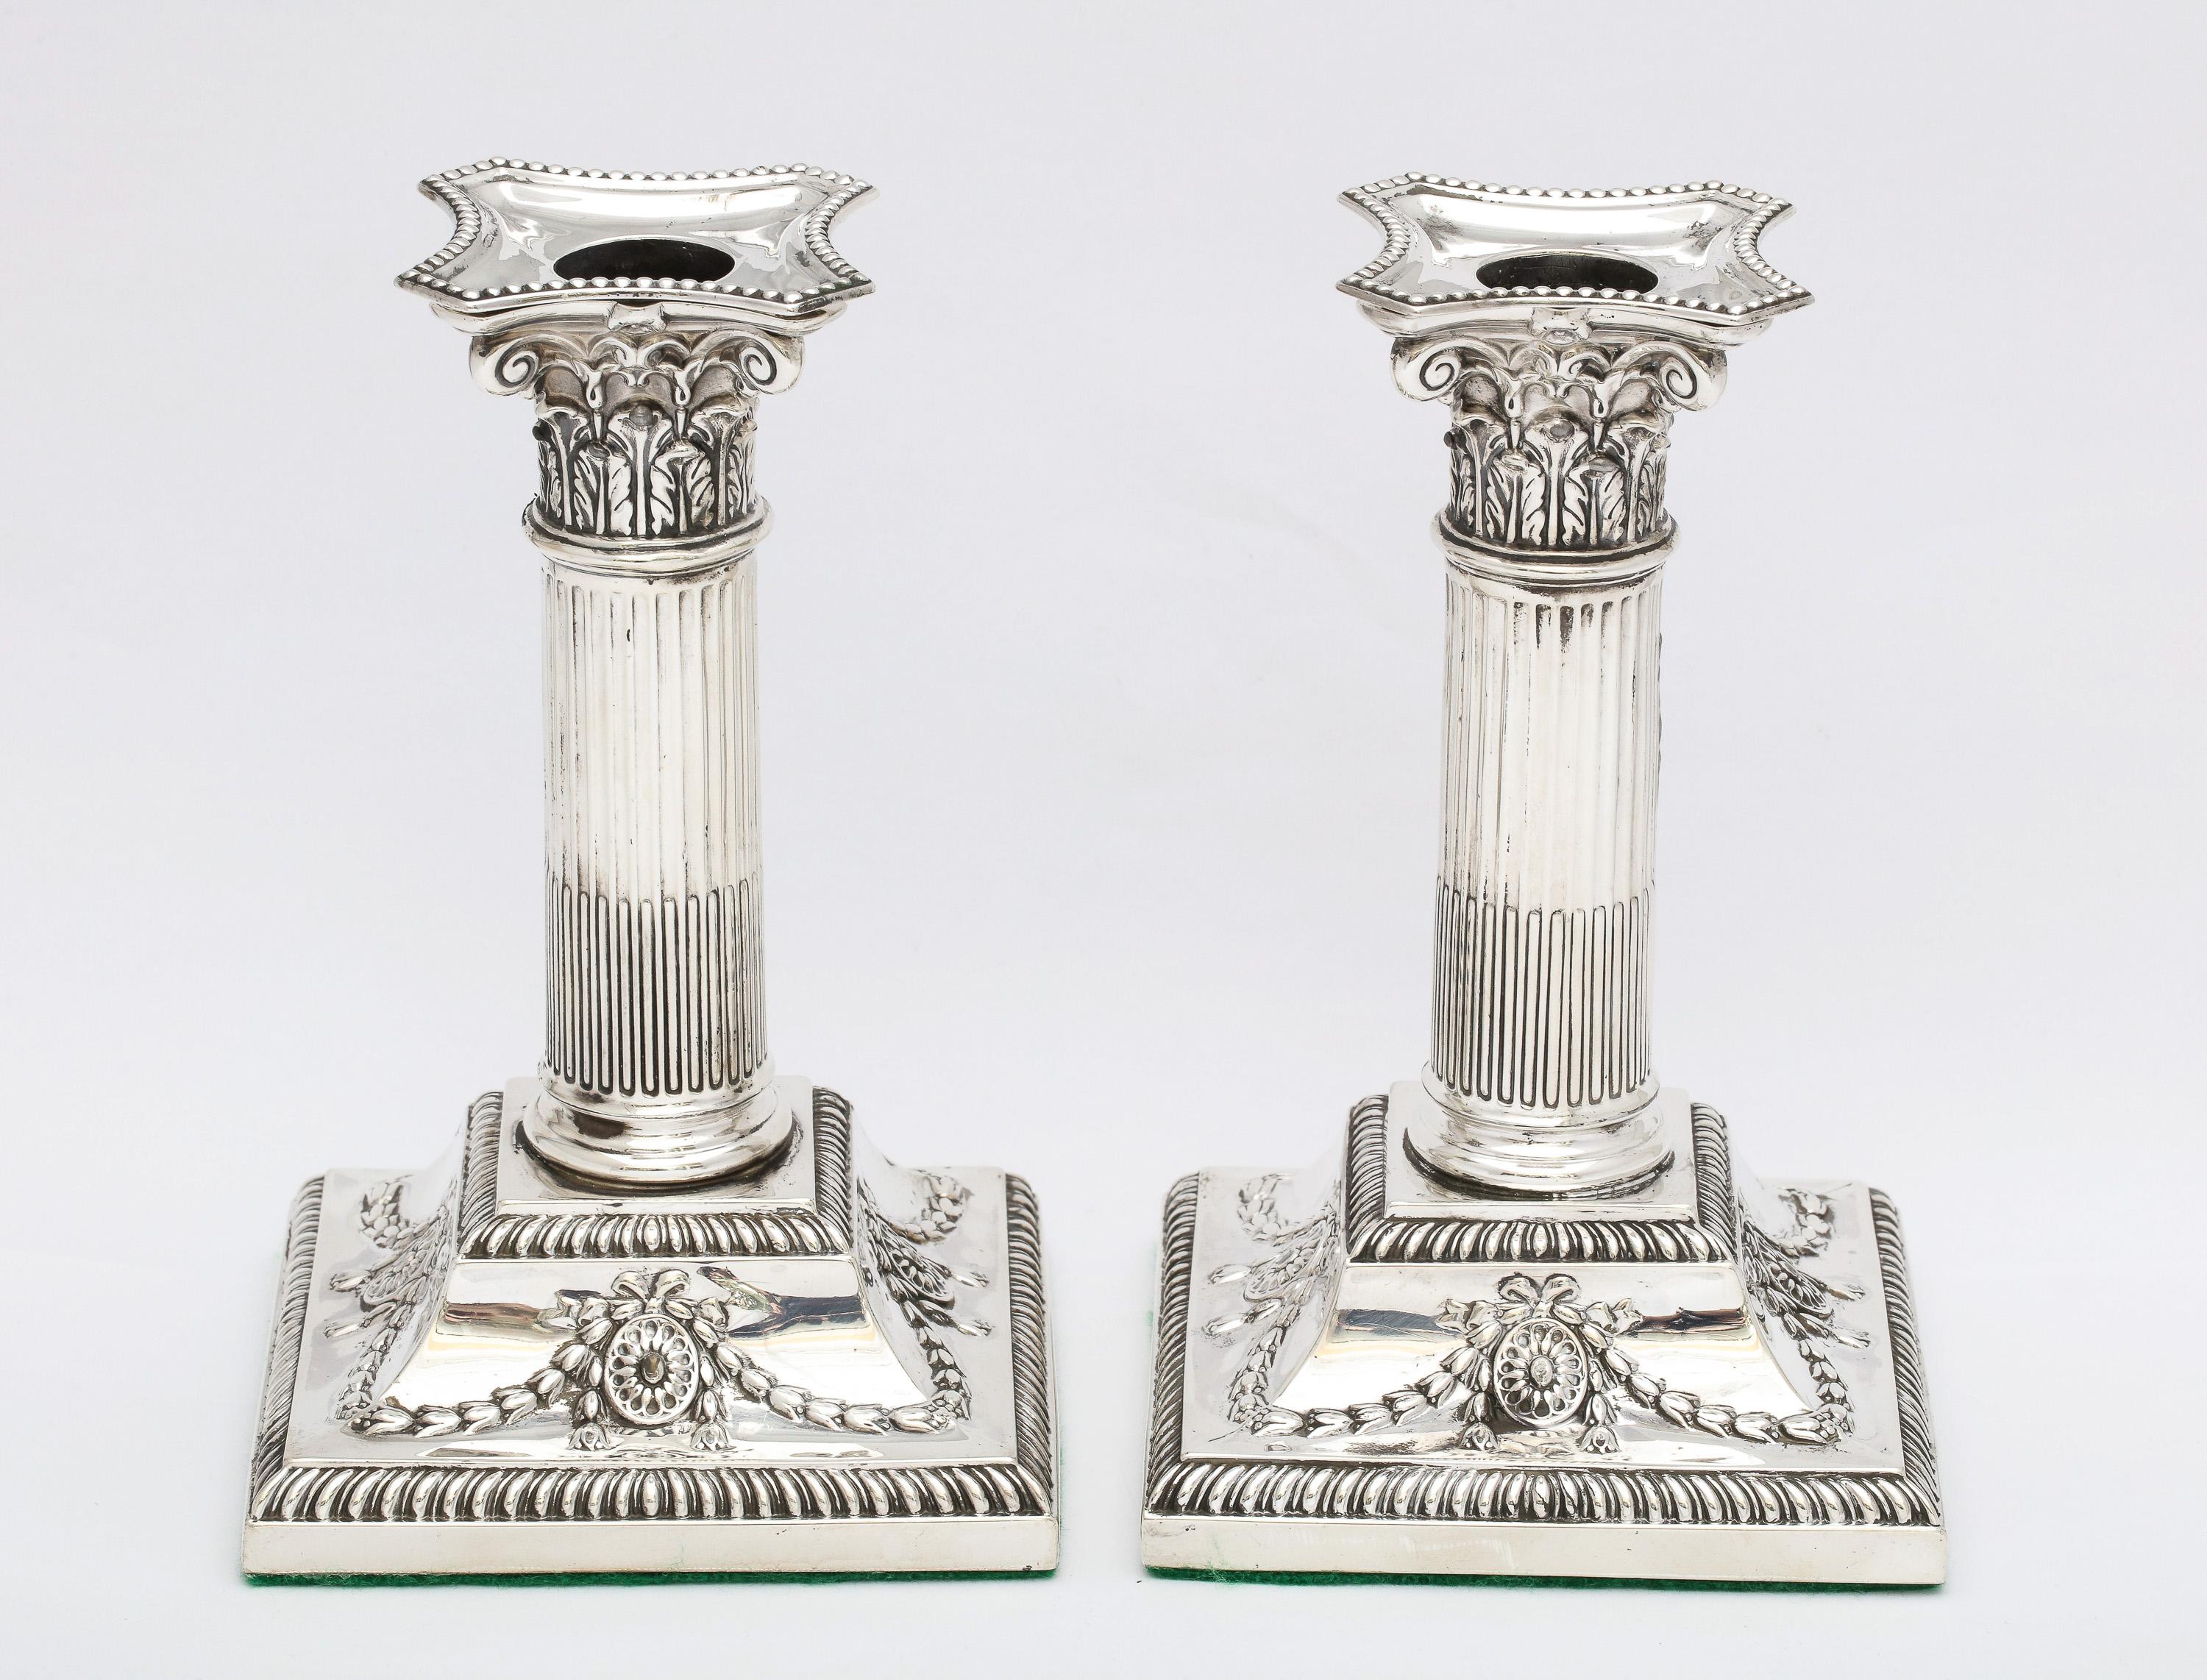 Magnifique paire de chandeliers à colonne corinthienne en argent sterling de la période victorienne, de style néoclassique, fabriqués dans la ville de Sheffield, en Angleterre, portant le poinçon de l'année 1898, Hawksworth, Eyre and Co, Ltd -